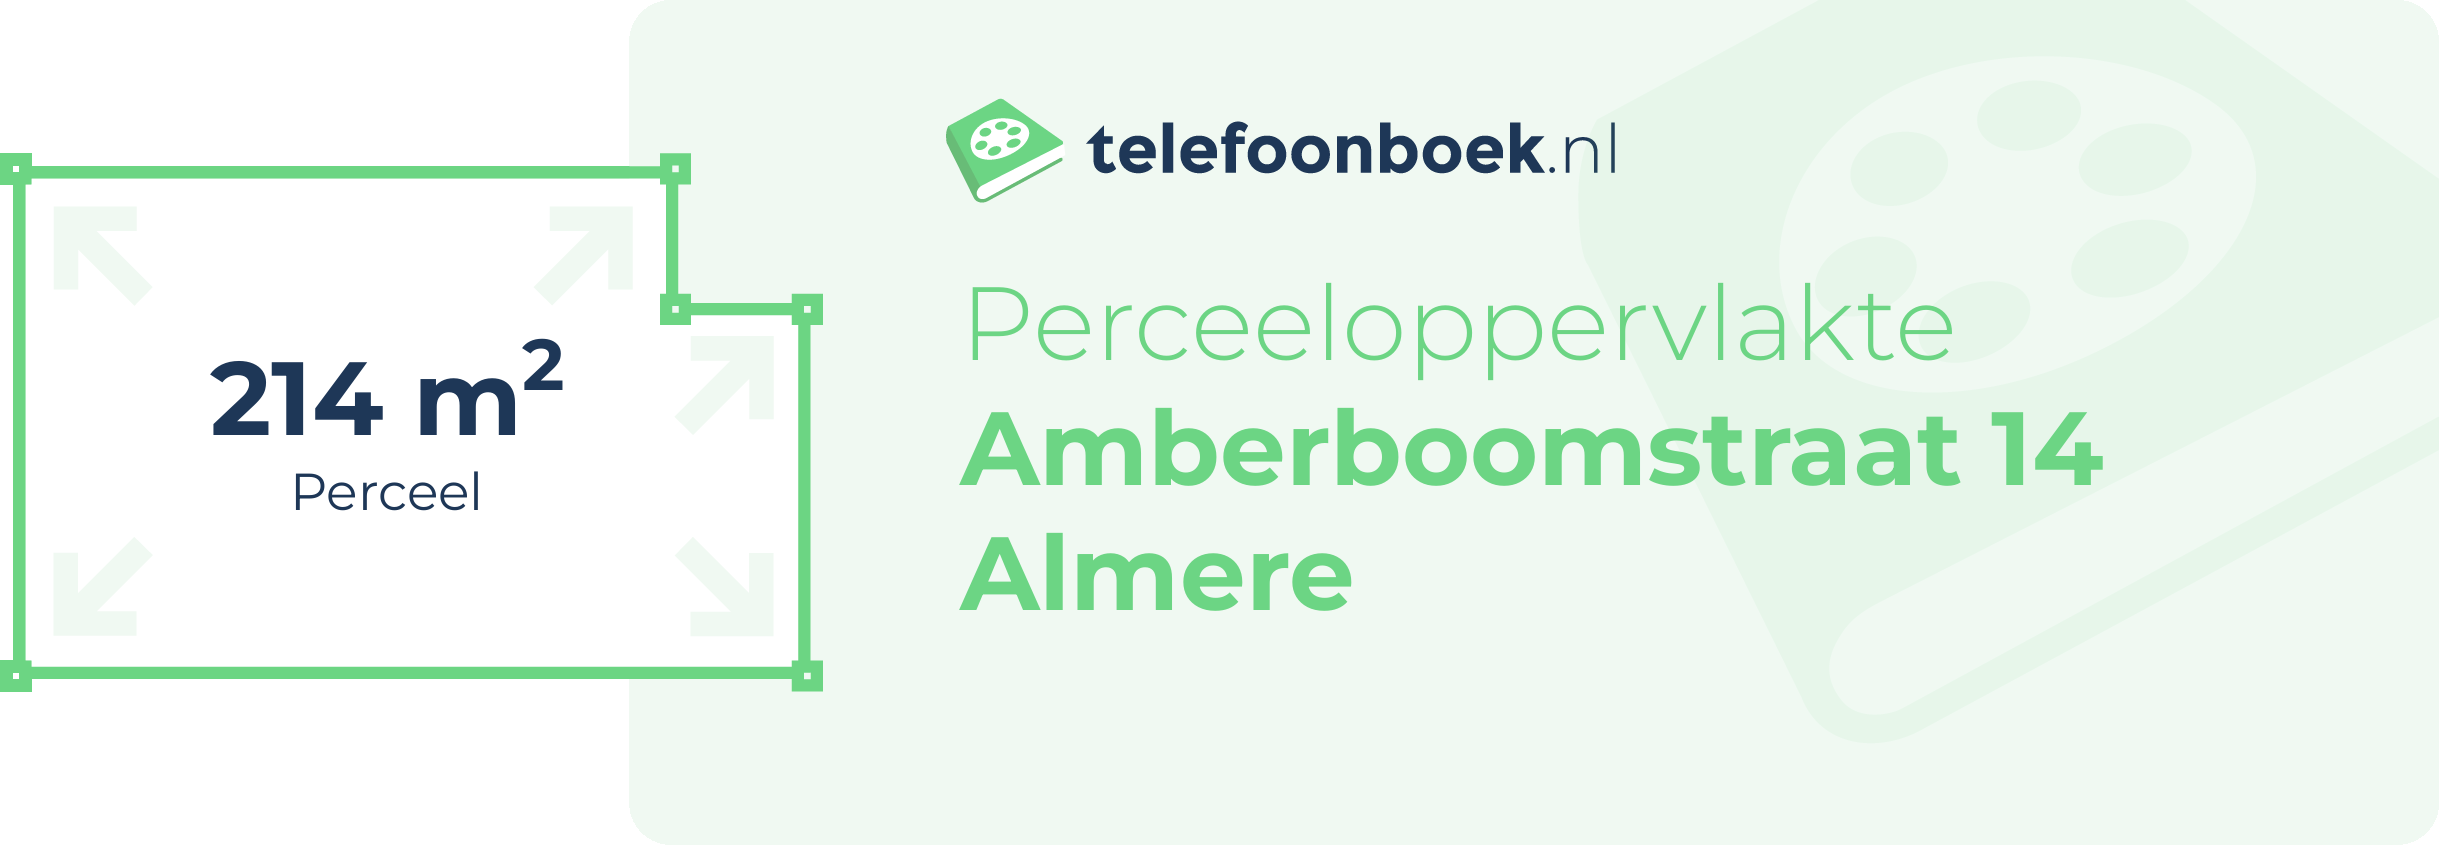 Perceeloppervlakte Amberboomstraat 14 Almere